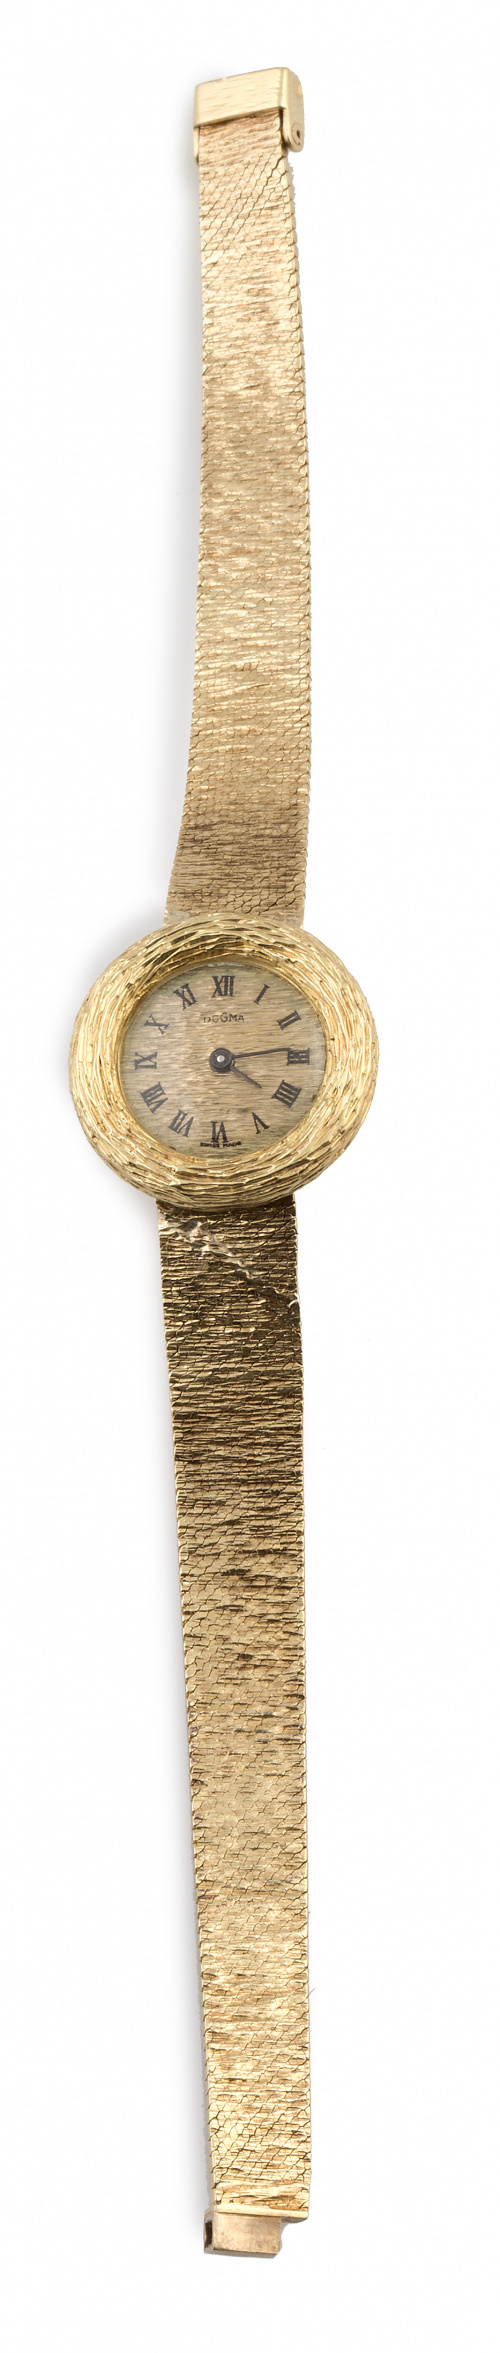 Reloj DOGMA años 60 en oro amarillo matizado de 18K